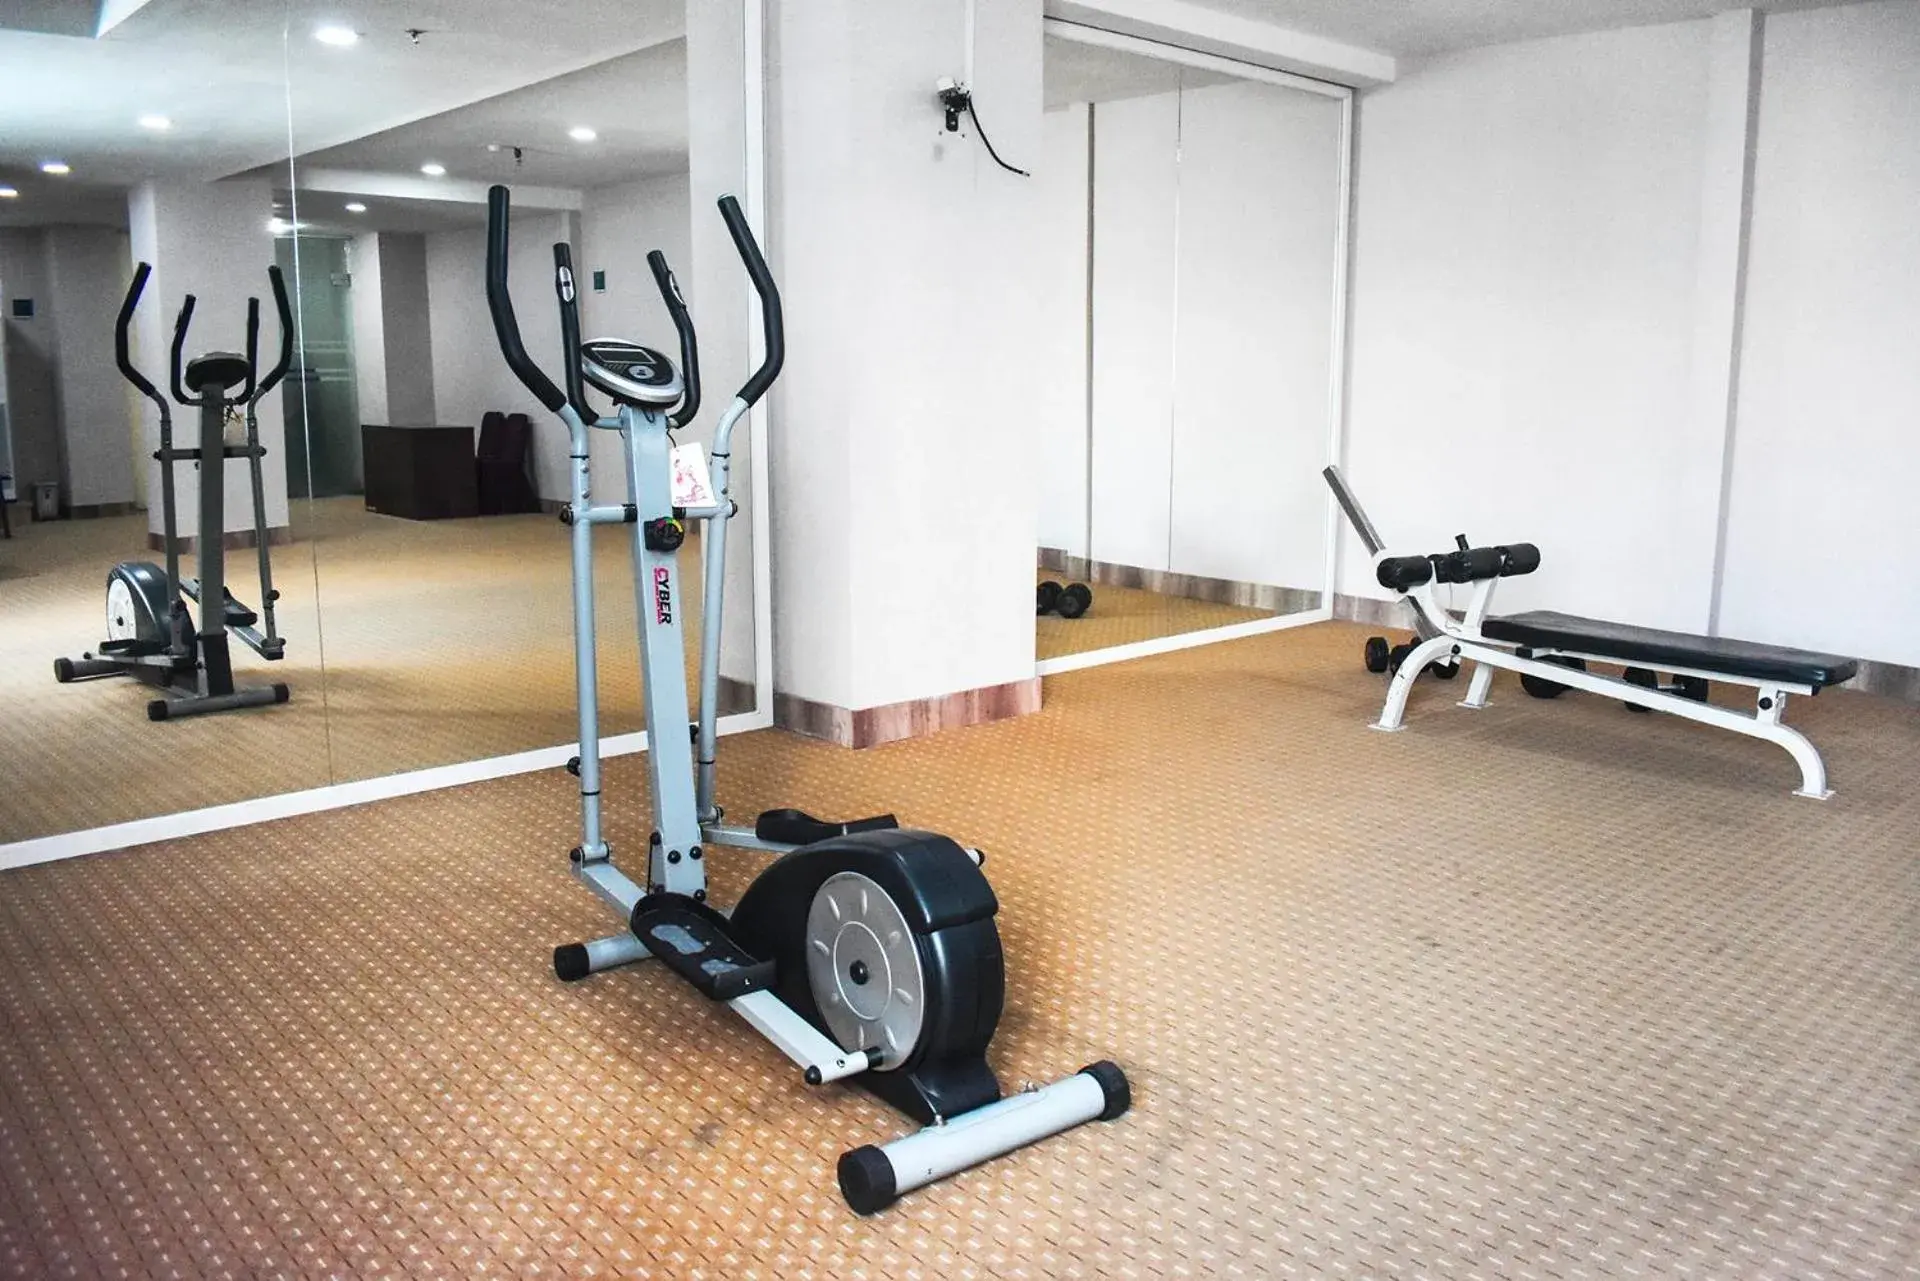 Fitness centre/facilities, Fitness Center/Facilities in Abadi Hotel Malioboro Yogyakarta by Tritama Hospitality